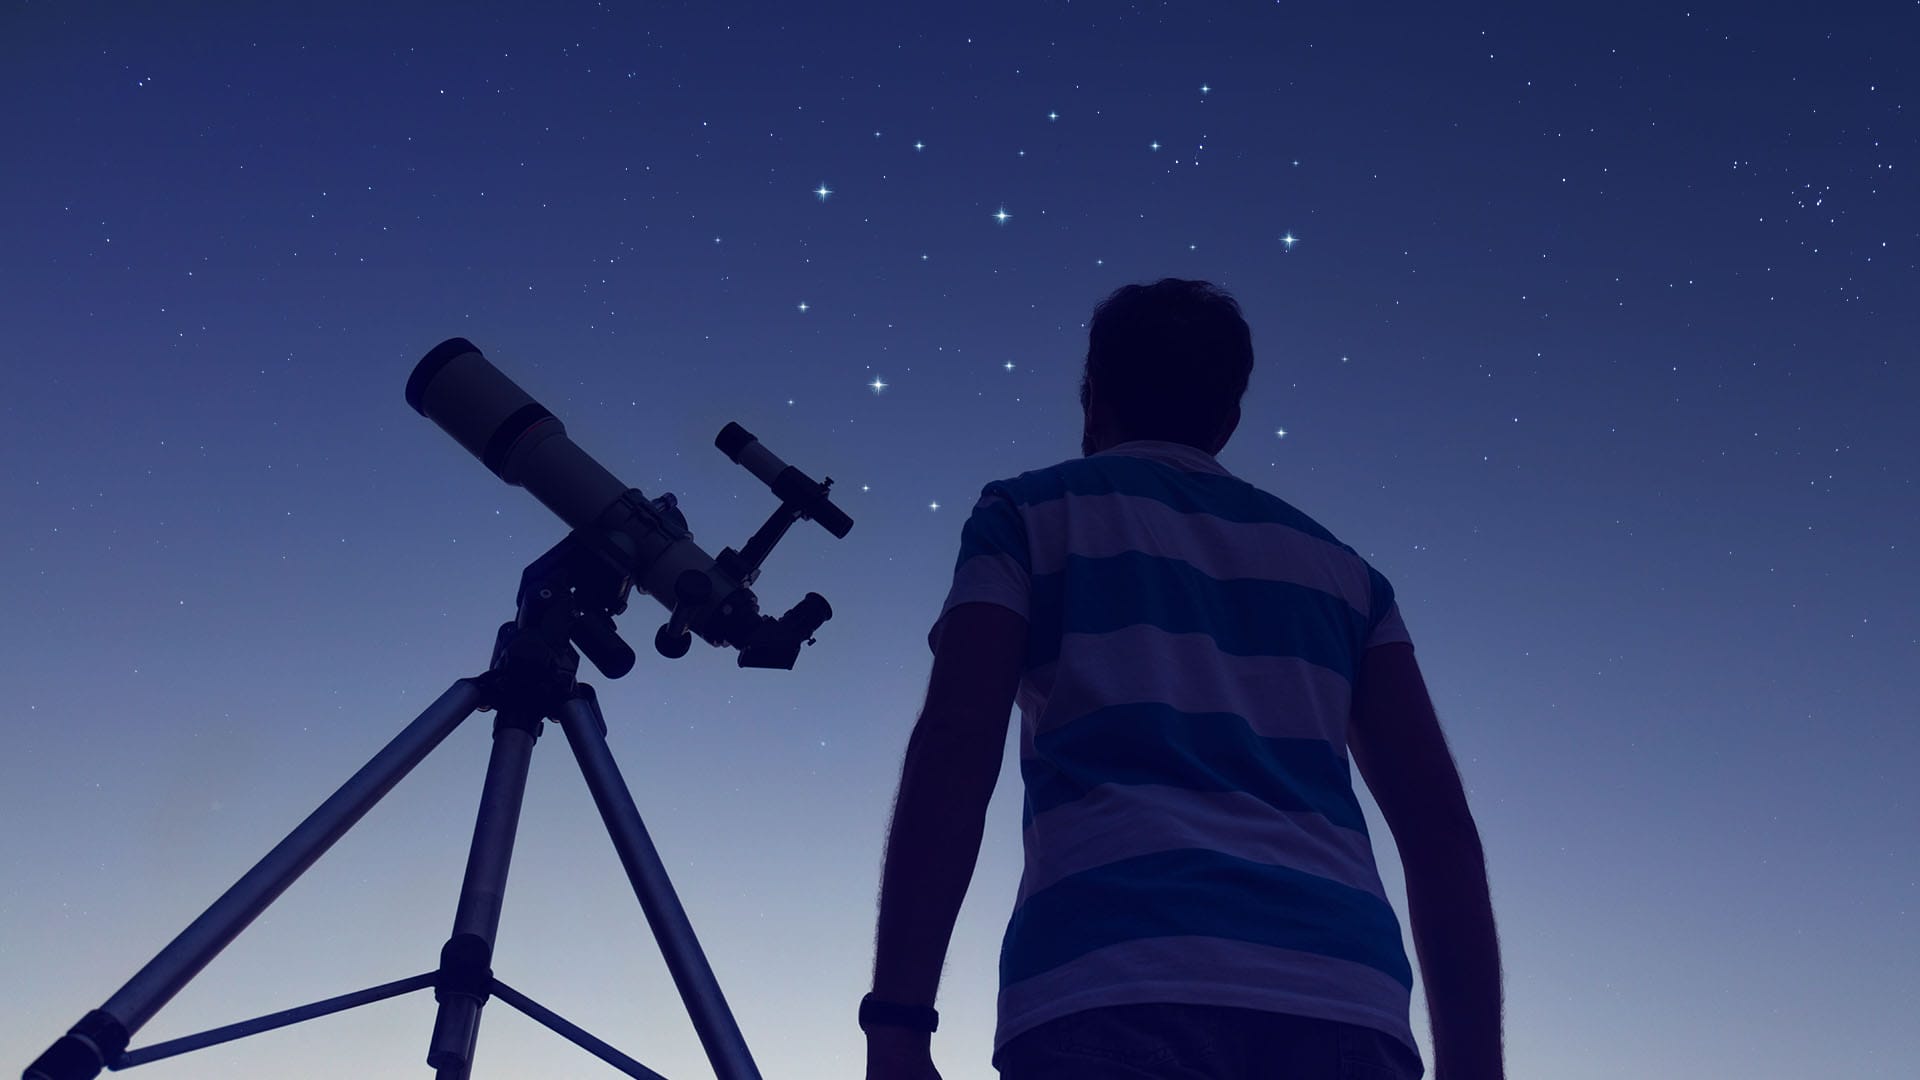 Comment mieux voir les objets peu lumineux dans le ciel ? La vision décalée